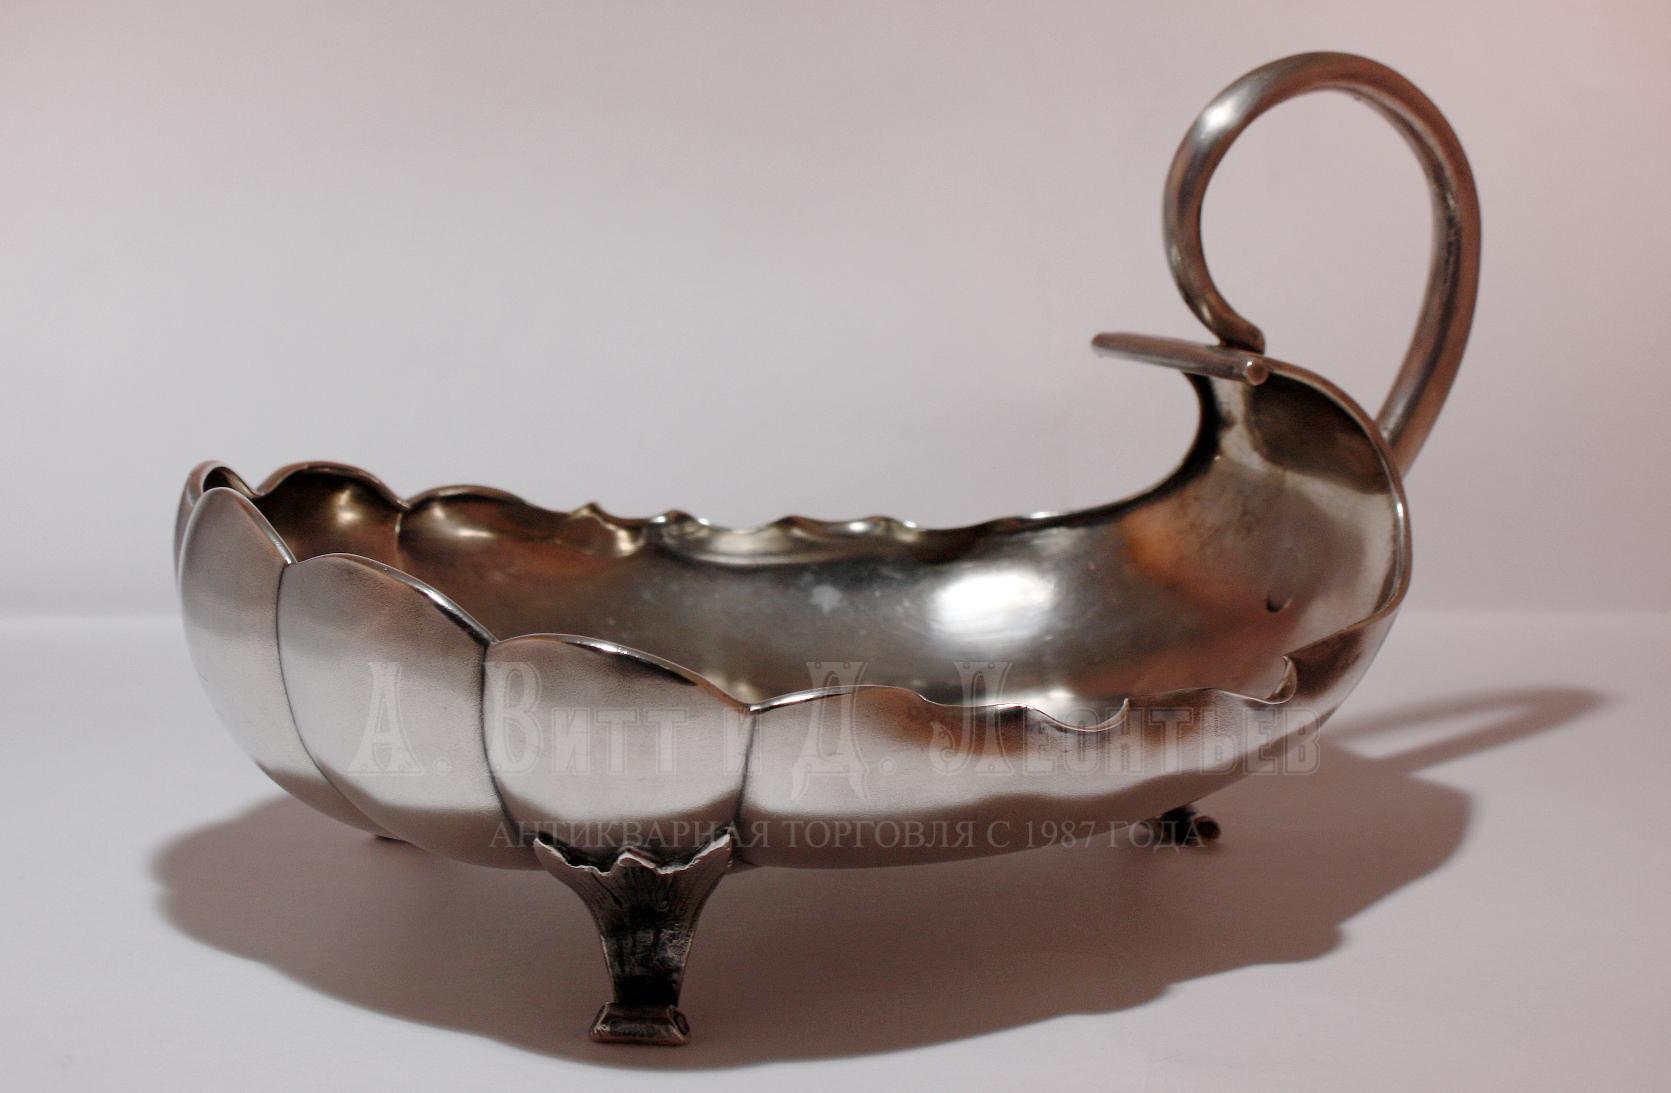 Антикварная декоративная вазочка - Русское серебро 19 века